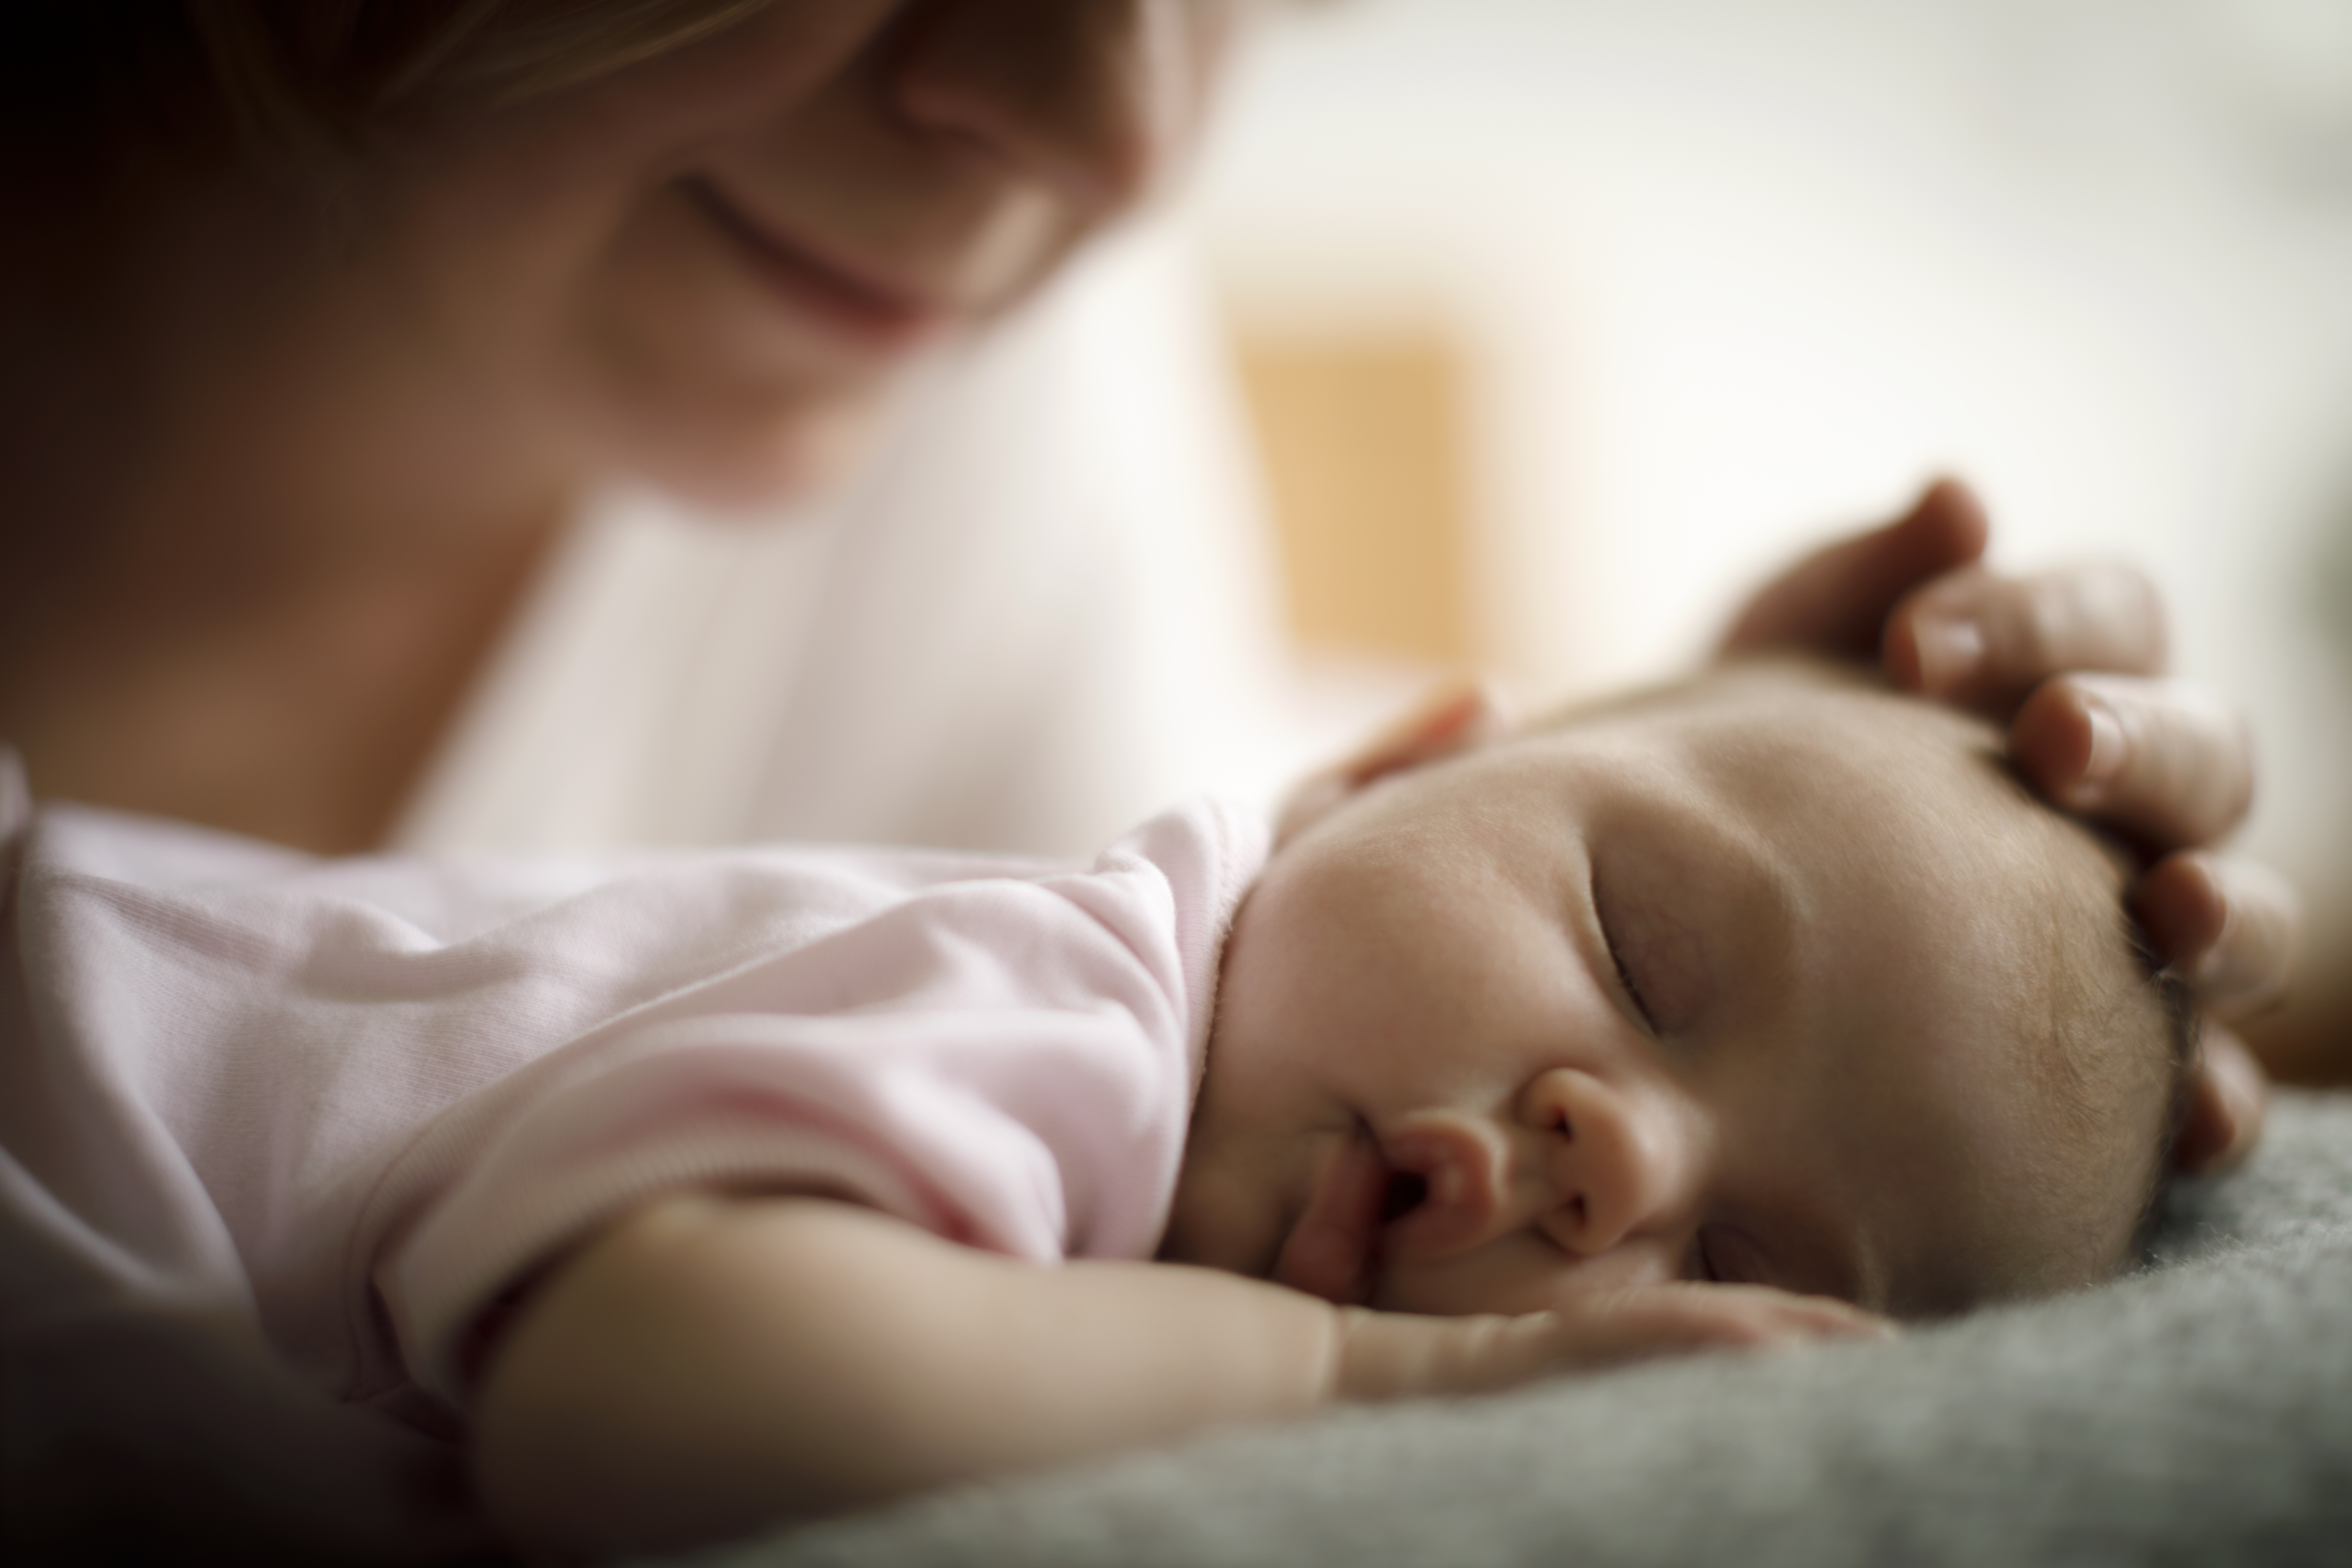 Desde el nacimiento hasta los seis meses de edad aproximadamente 1 de cada 2 bebés desarrolla al menos un trastorno funcional o signos y síntomas relacionados